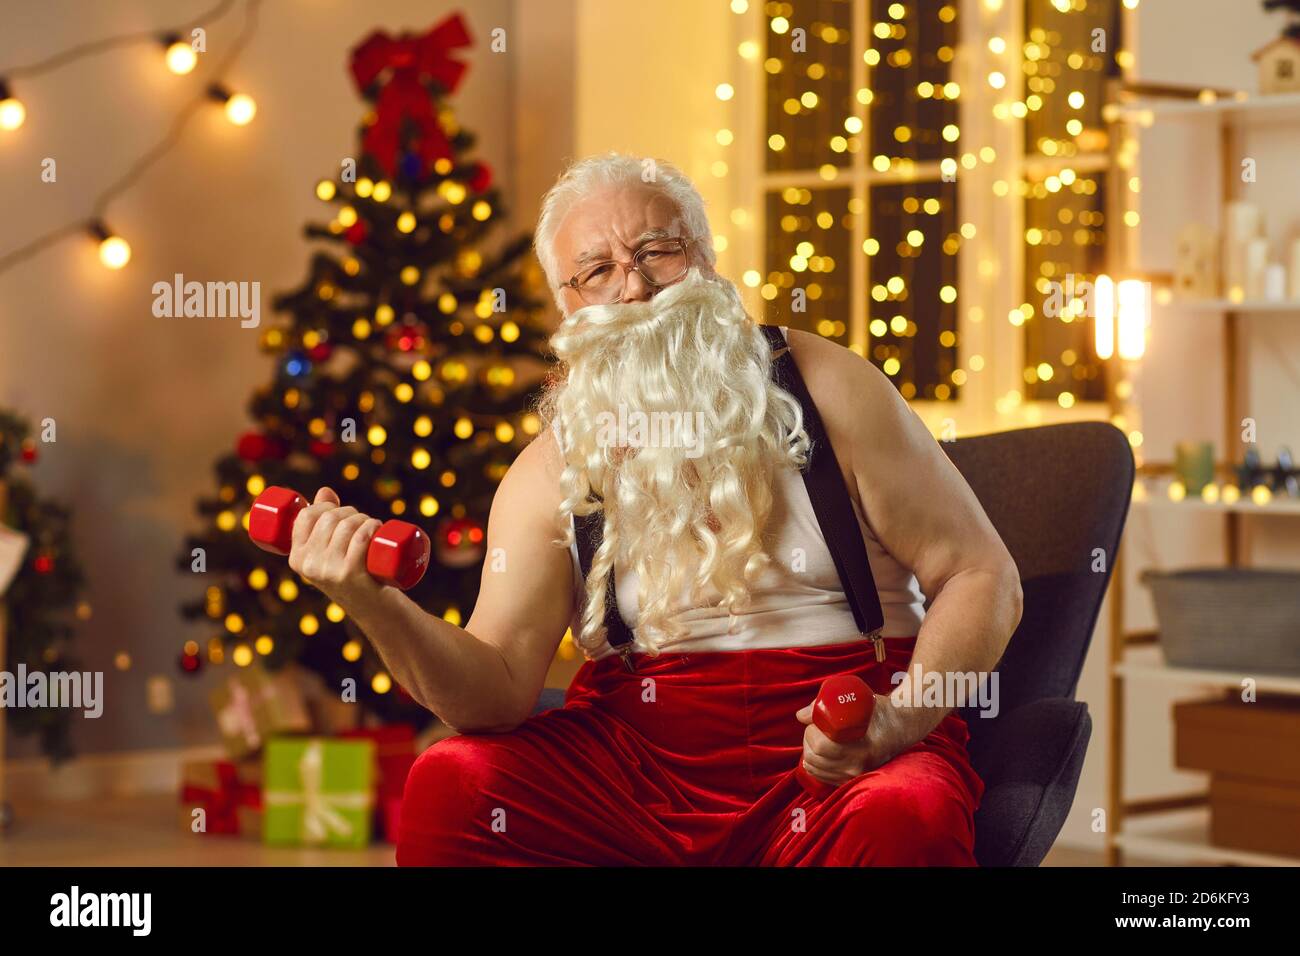 Elderly funny Santa in red velvet suspender costume making exercise with dumbbels Stock Photo